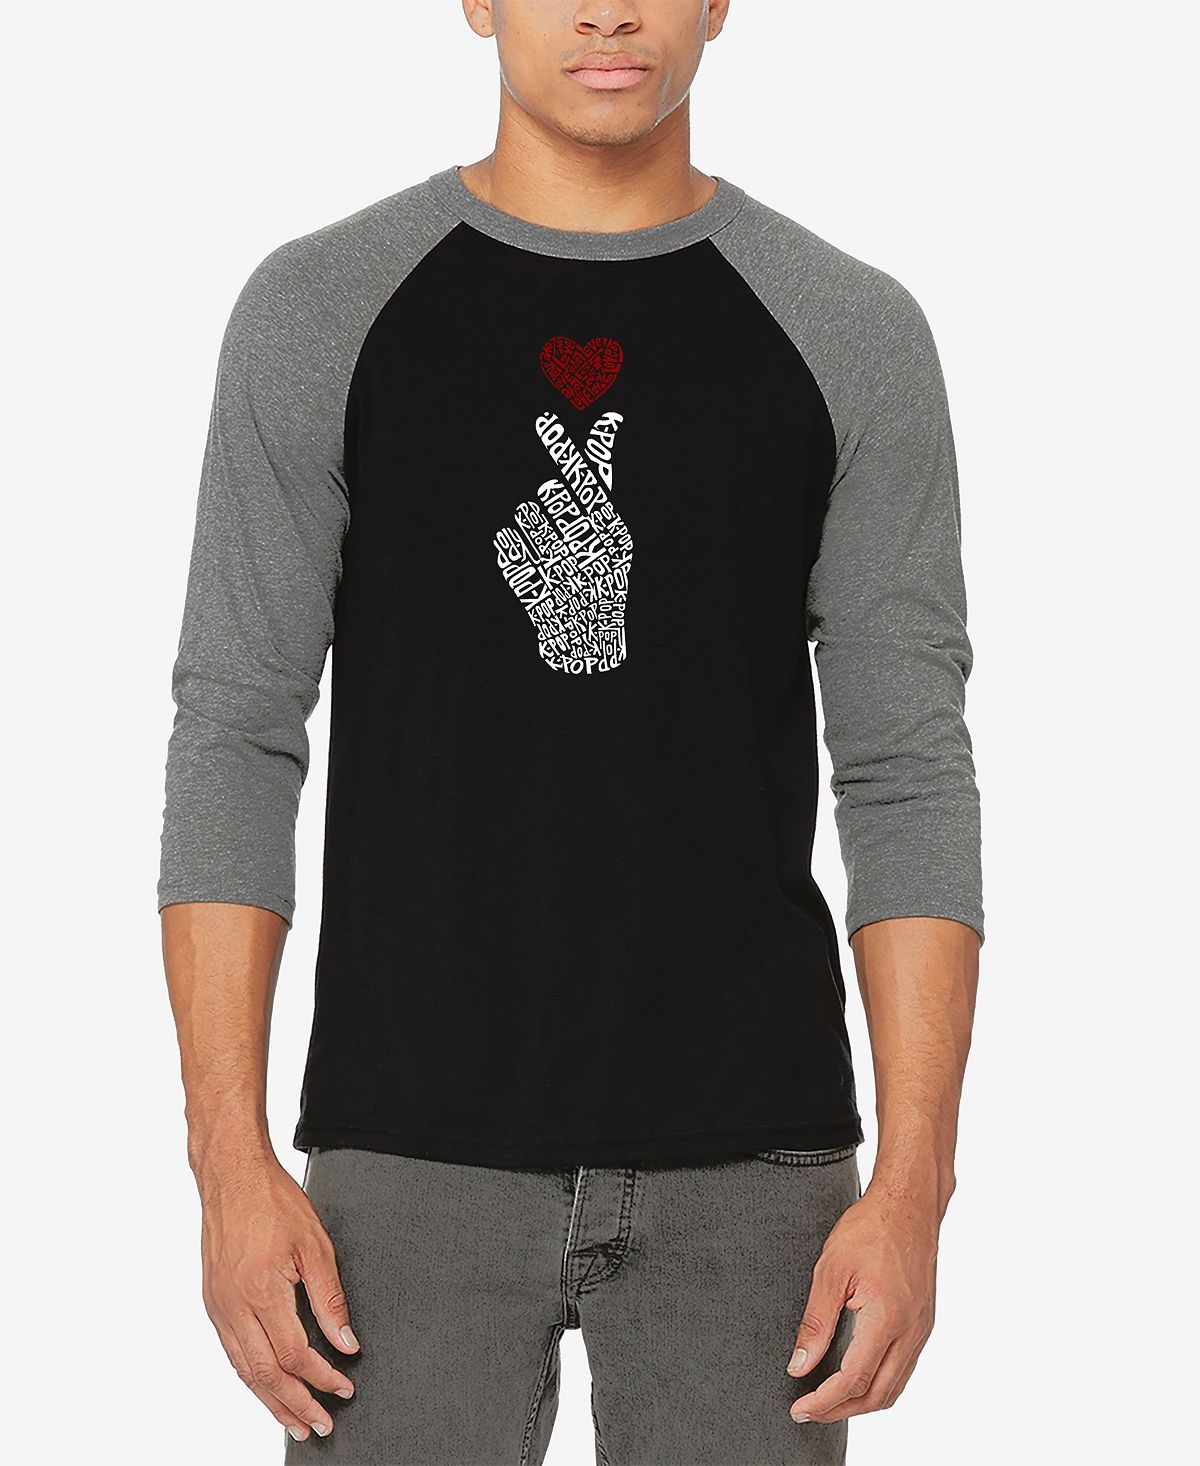 Мужская бейсбольная футболка реглан с рукавом 3/4 k-pop word art футболка LA Pop Art, мульти